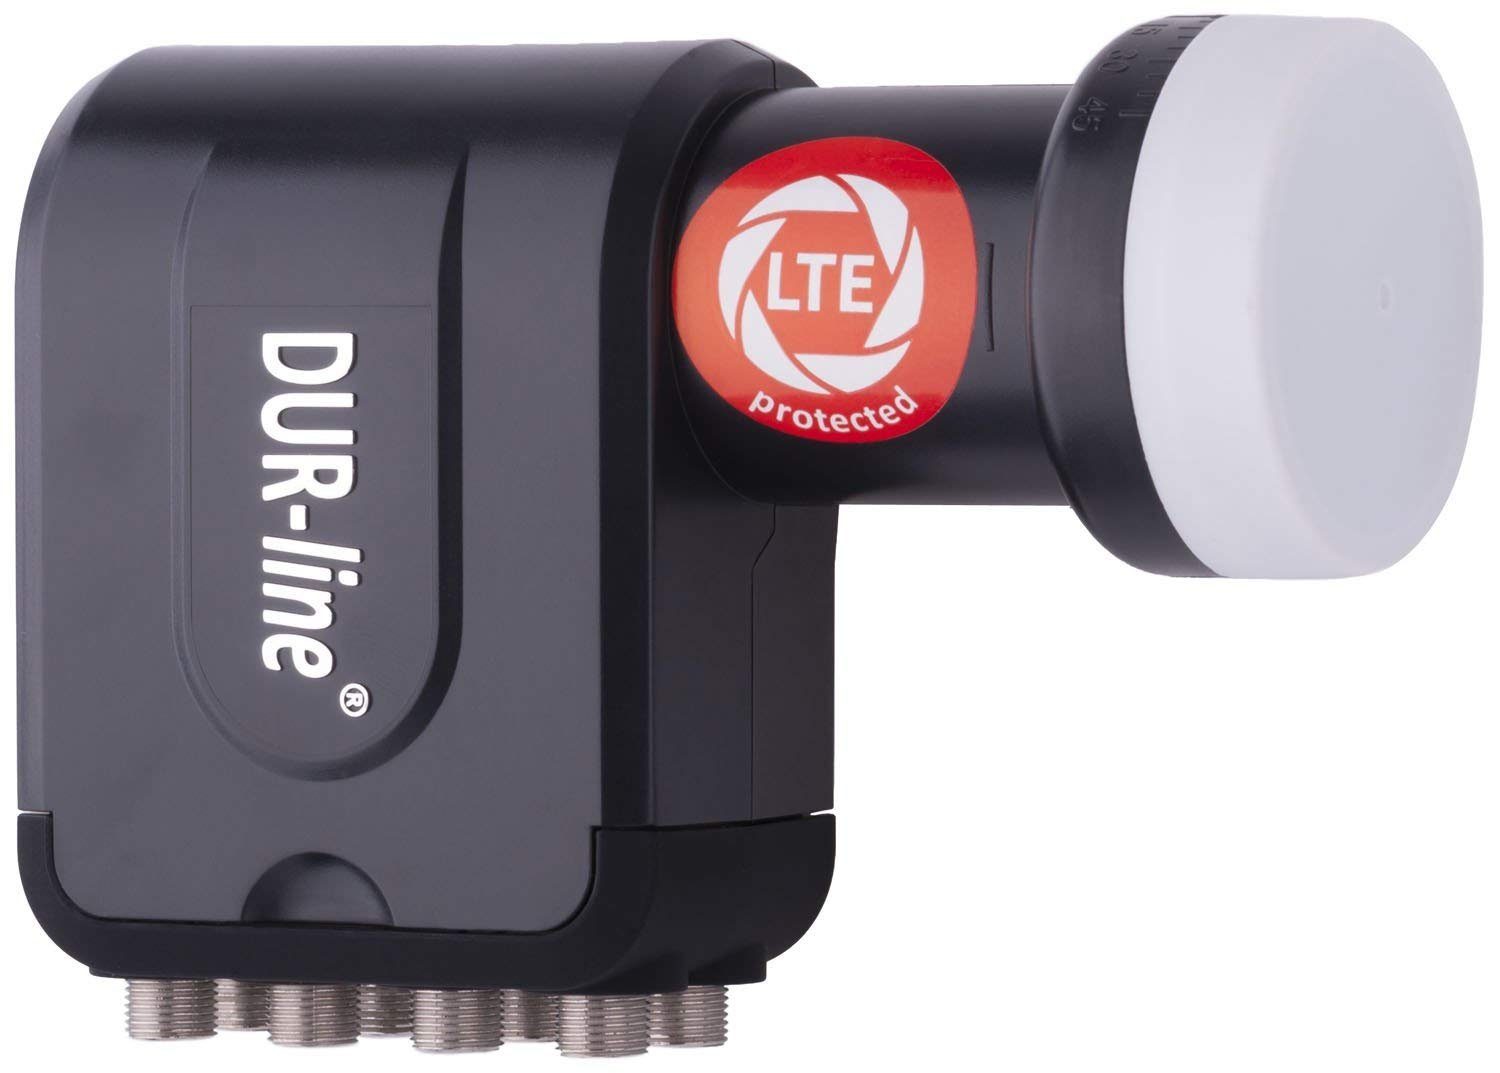 Octo DUR-line LNB [ Teilnehmer Universal-Octo-LNB DUR-line - 8 +Ultra - LTE-Filter mit schwarz